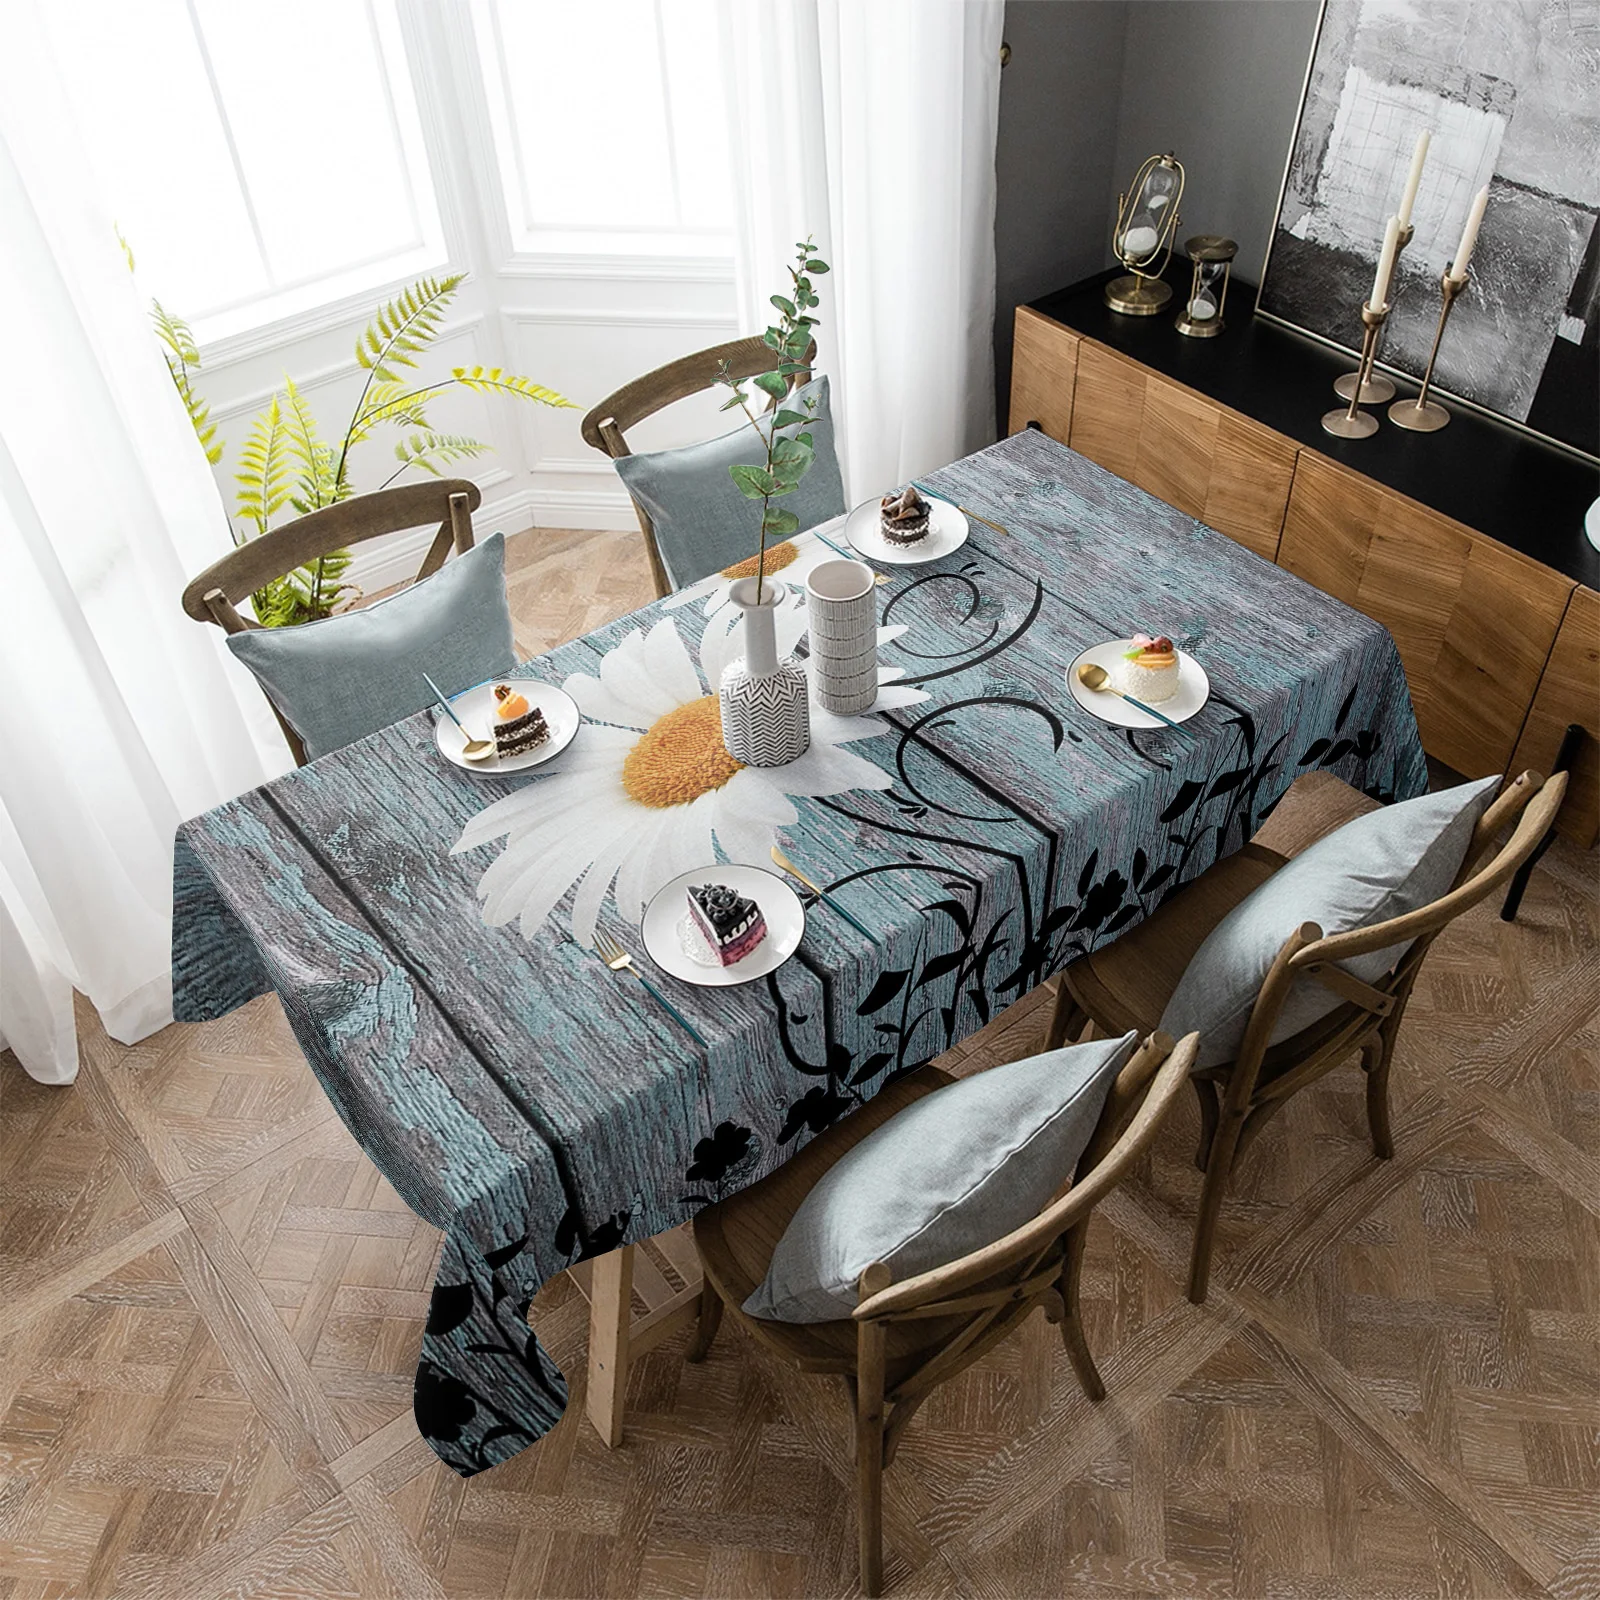 

Скатерти с маргариткой в стиле ретро, водостойкая прямоугольная скатерть с рисунком бабочки, для обеденного стола, кухни, гостиной